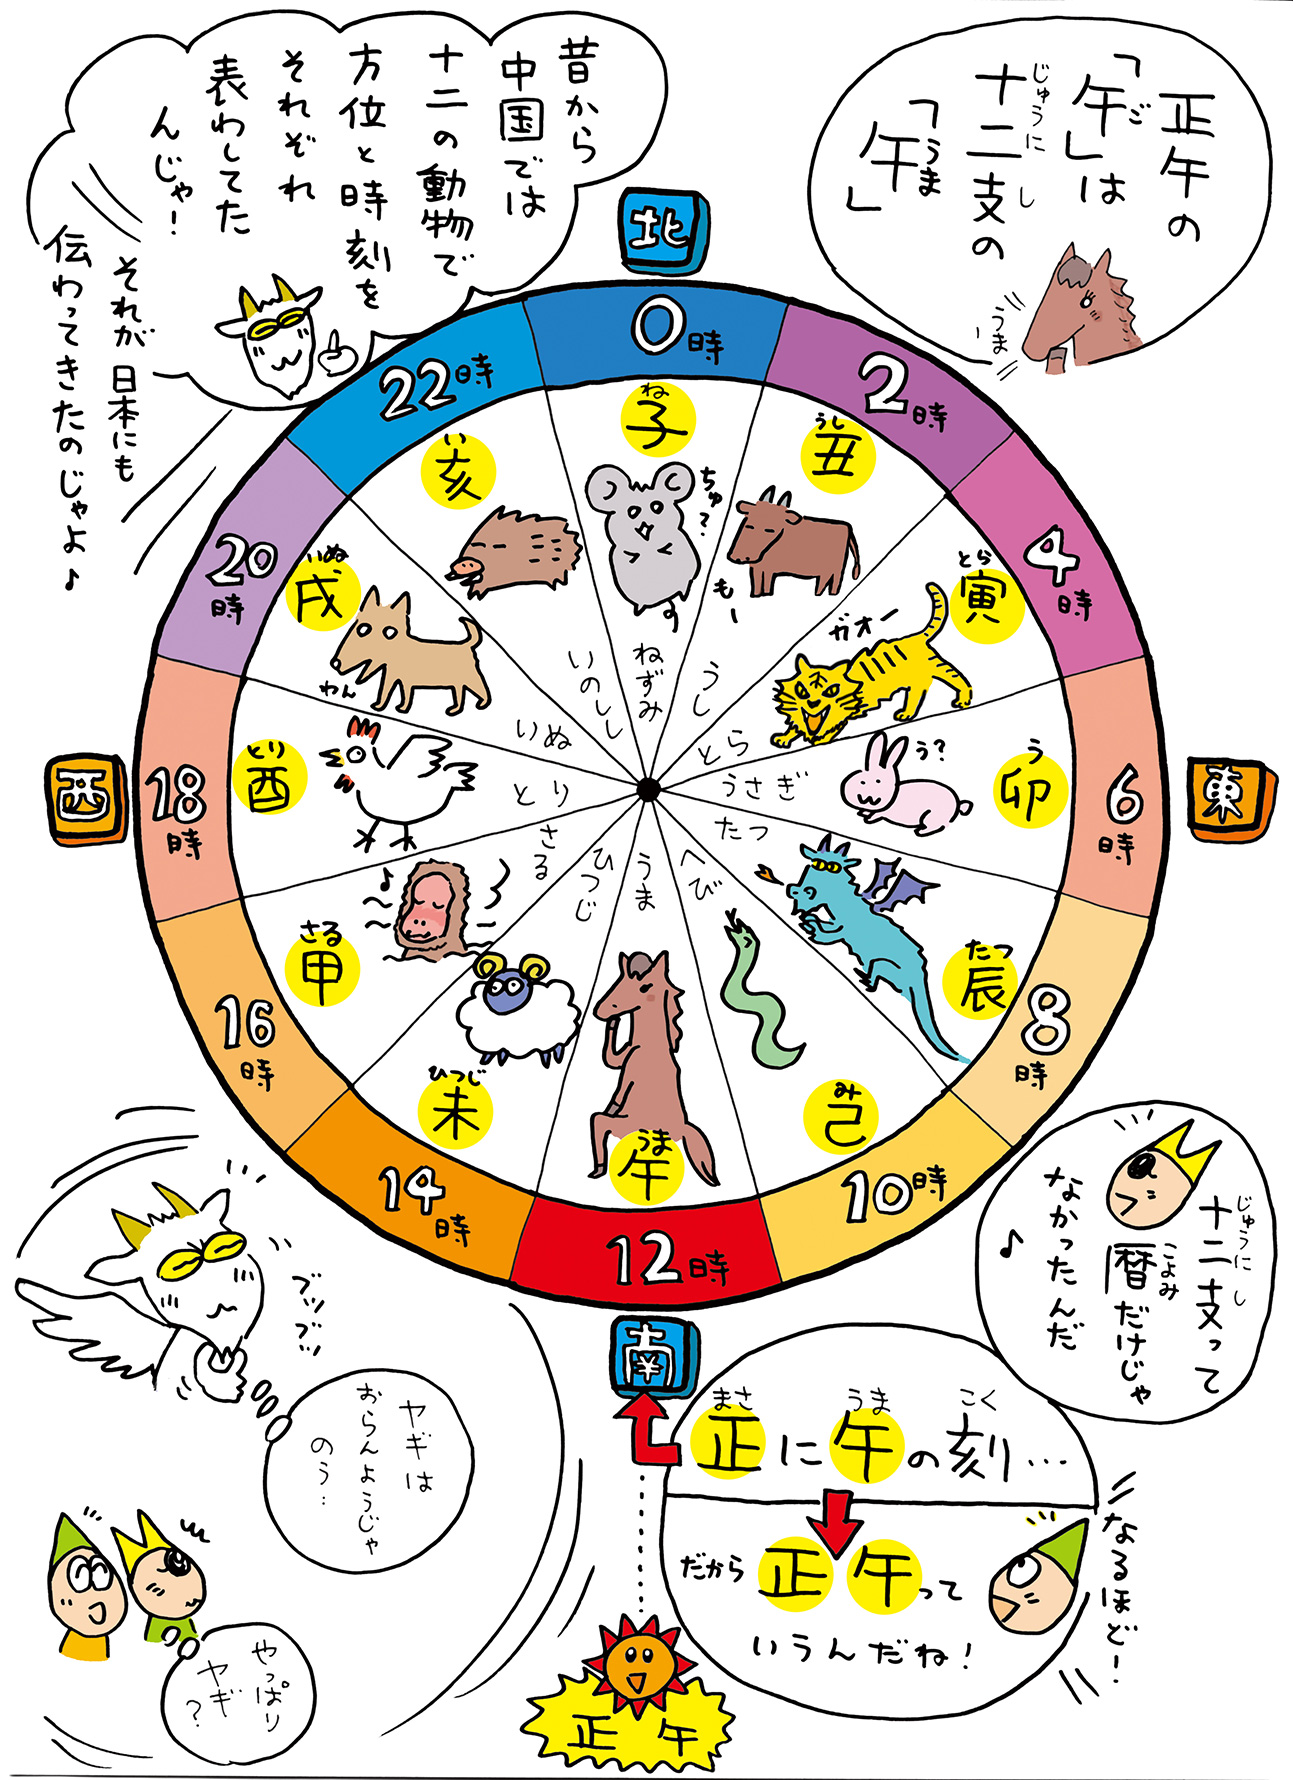 正午の「午」は十二支の「うま」昔から中国では十二の動物で方位と時刻をそれぞれ表してたんじゃ！それが日本にも伝わってきたのじゃよ♫十二支って暦だけじゃんかったんだ。正に午の刻、、、だから正午っていうんだね！